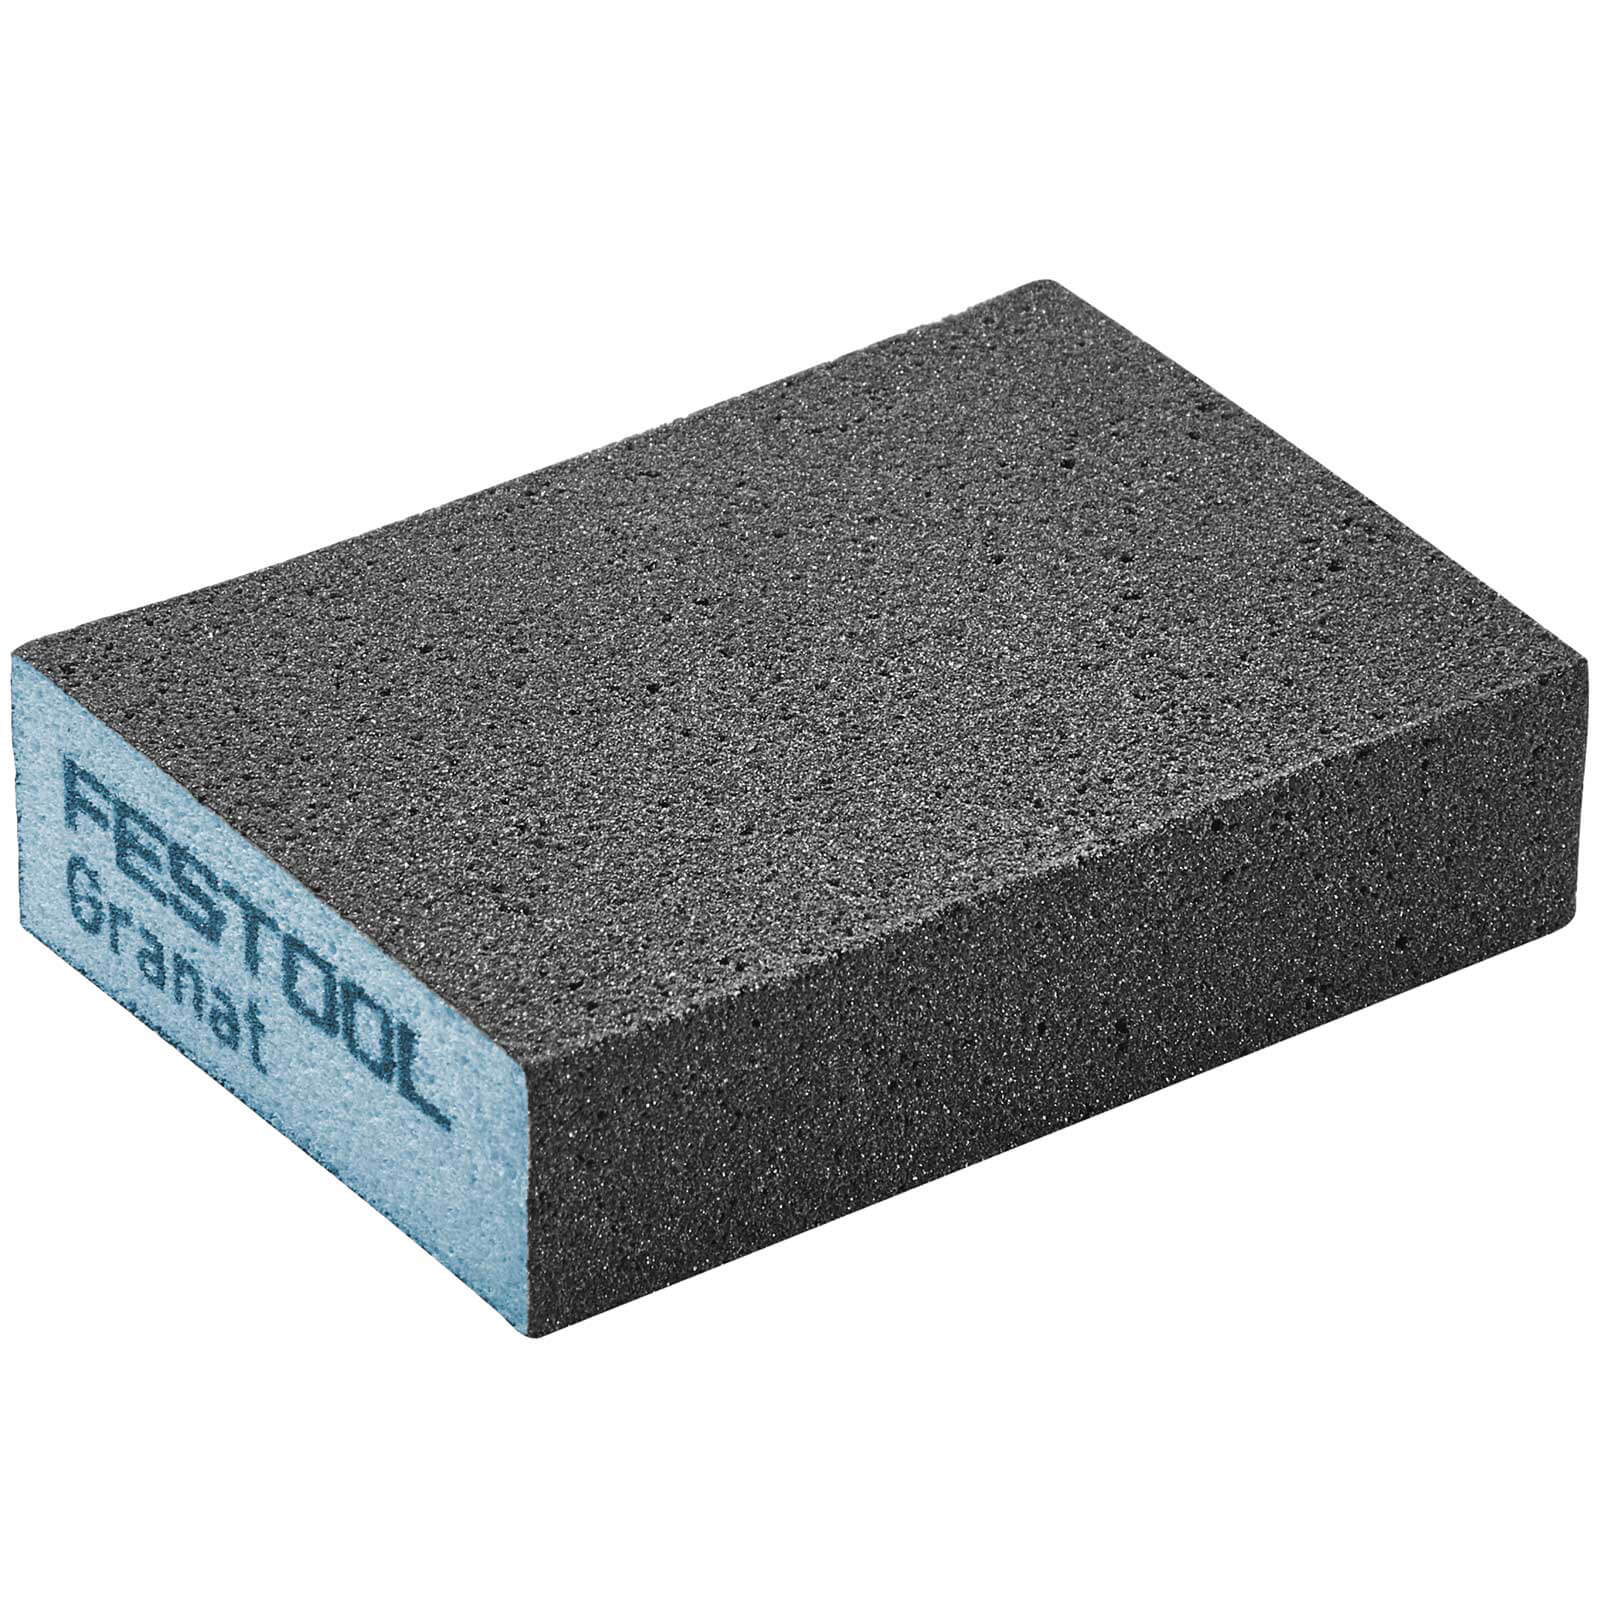 Image of Festool Abrasive Hand Sanding Sponge Block 60g Pack of 6